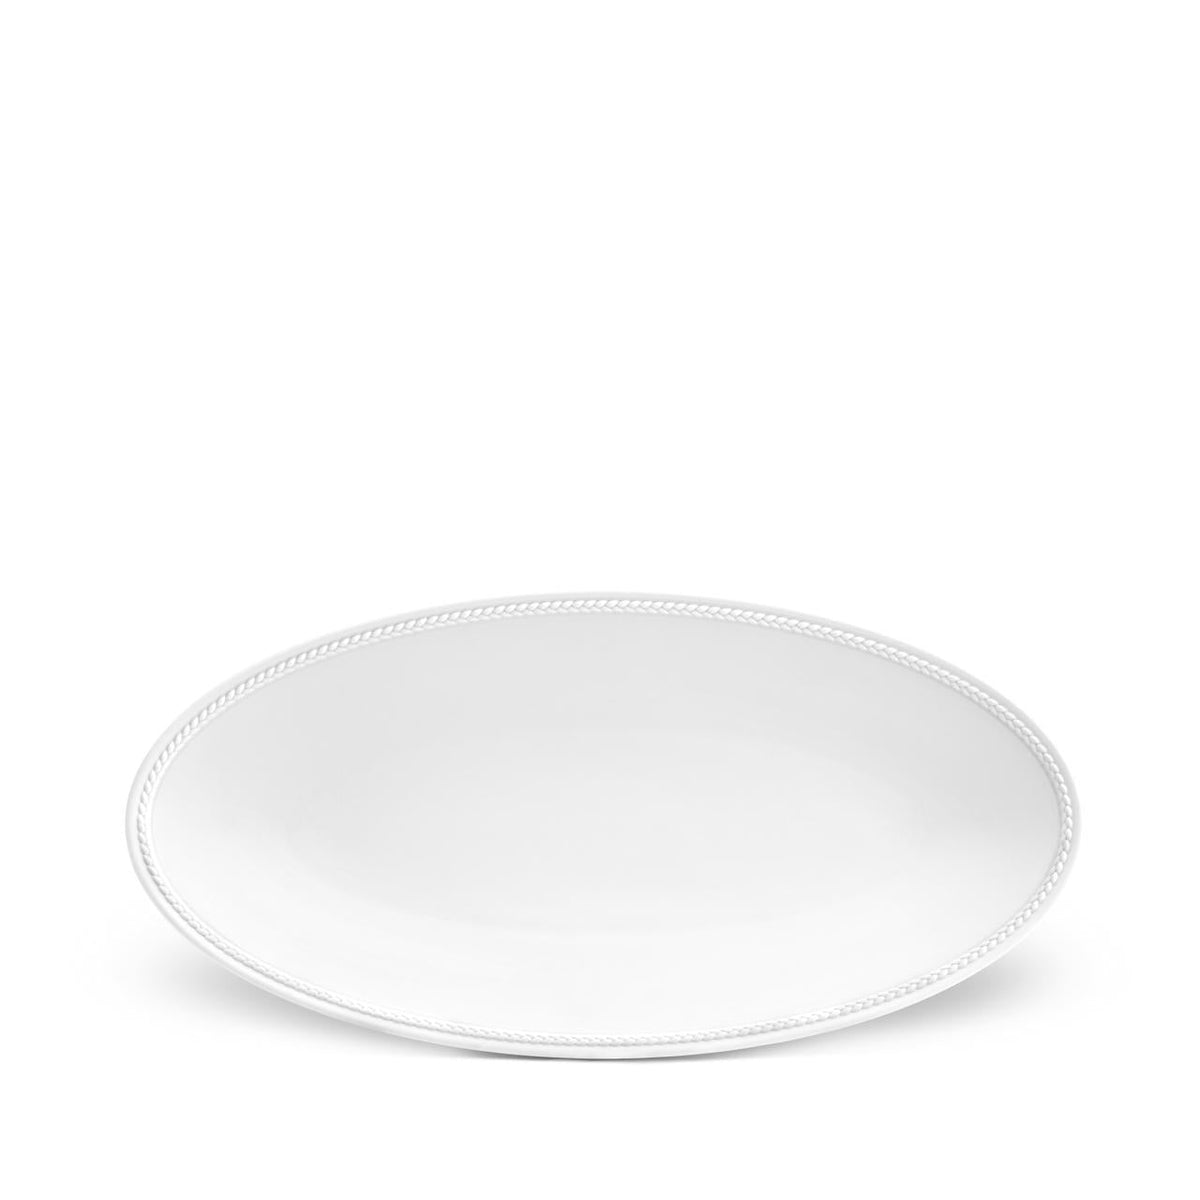 Soie Tress̩e Small Oval Platter